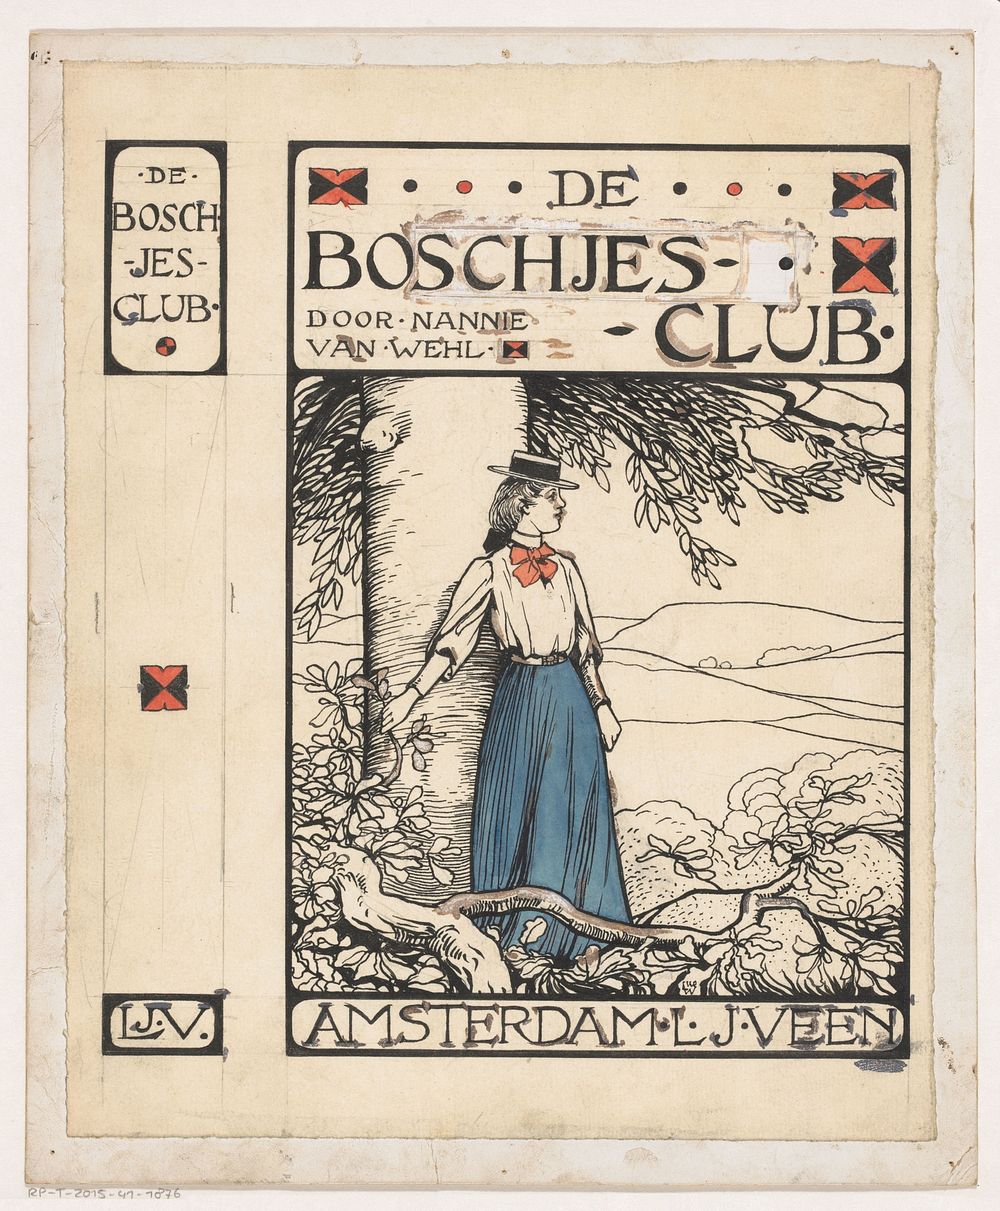 Bandontwerp voor: Nannie van Wehl, De Boschjes-club, 1905 (in or before 1905) by Willem Wenckebach